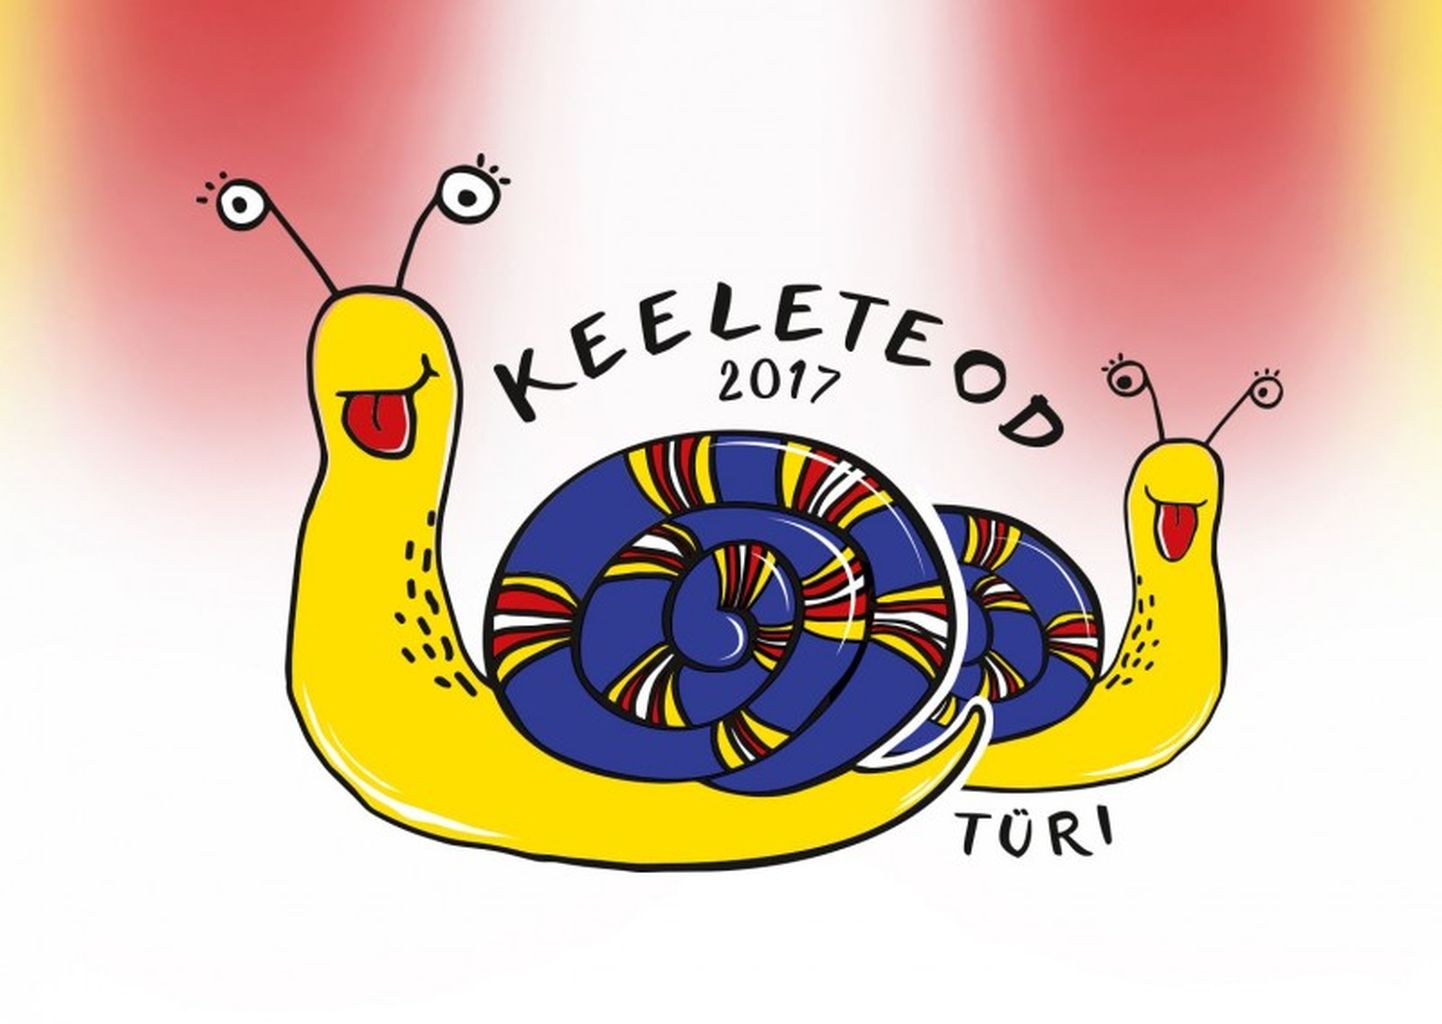 Keeleteod 2017 logo.